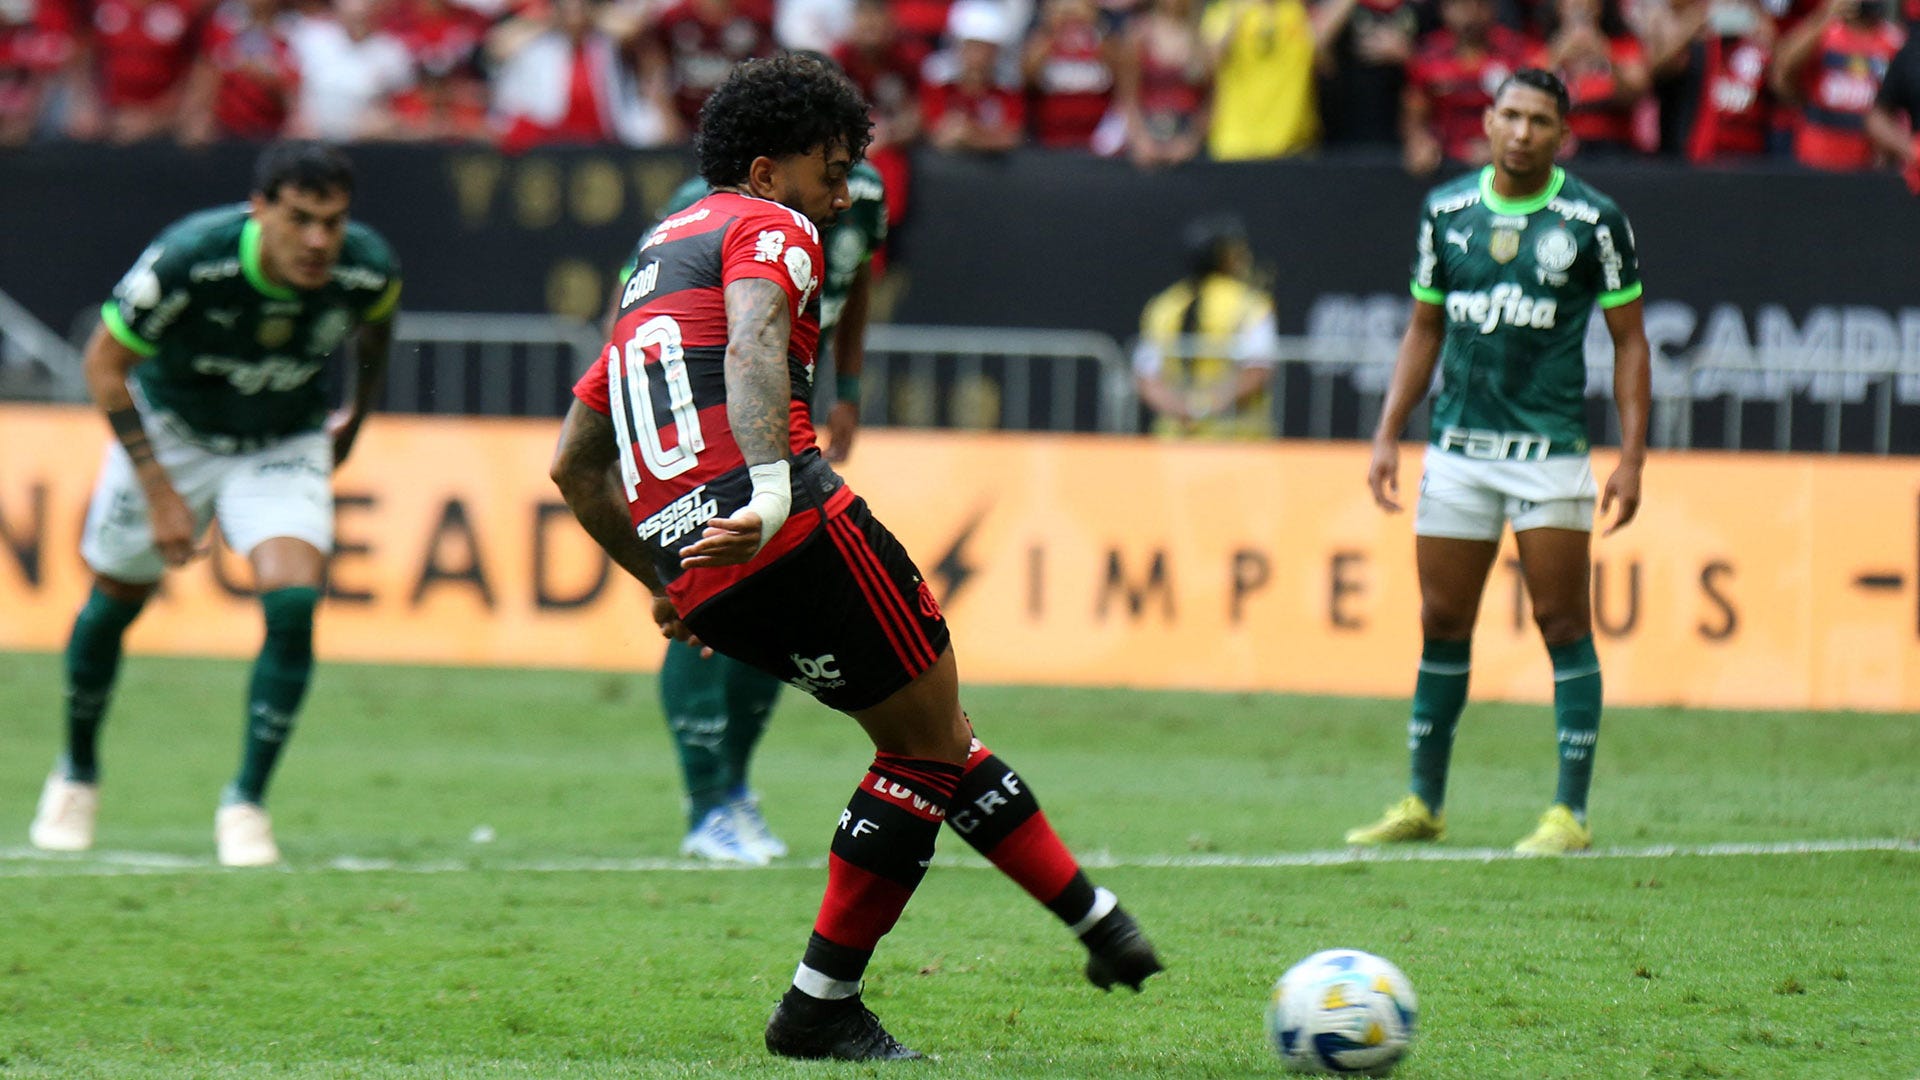 Superfutebol Supercopa - Flamengo 2 x 2 Palmeiras (6 x 5 nos pênaltis)